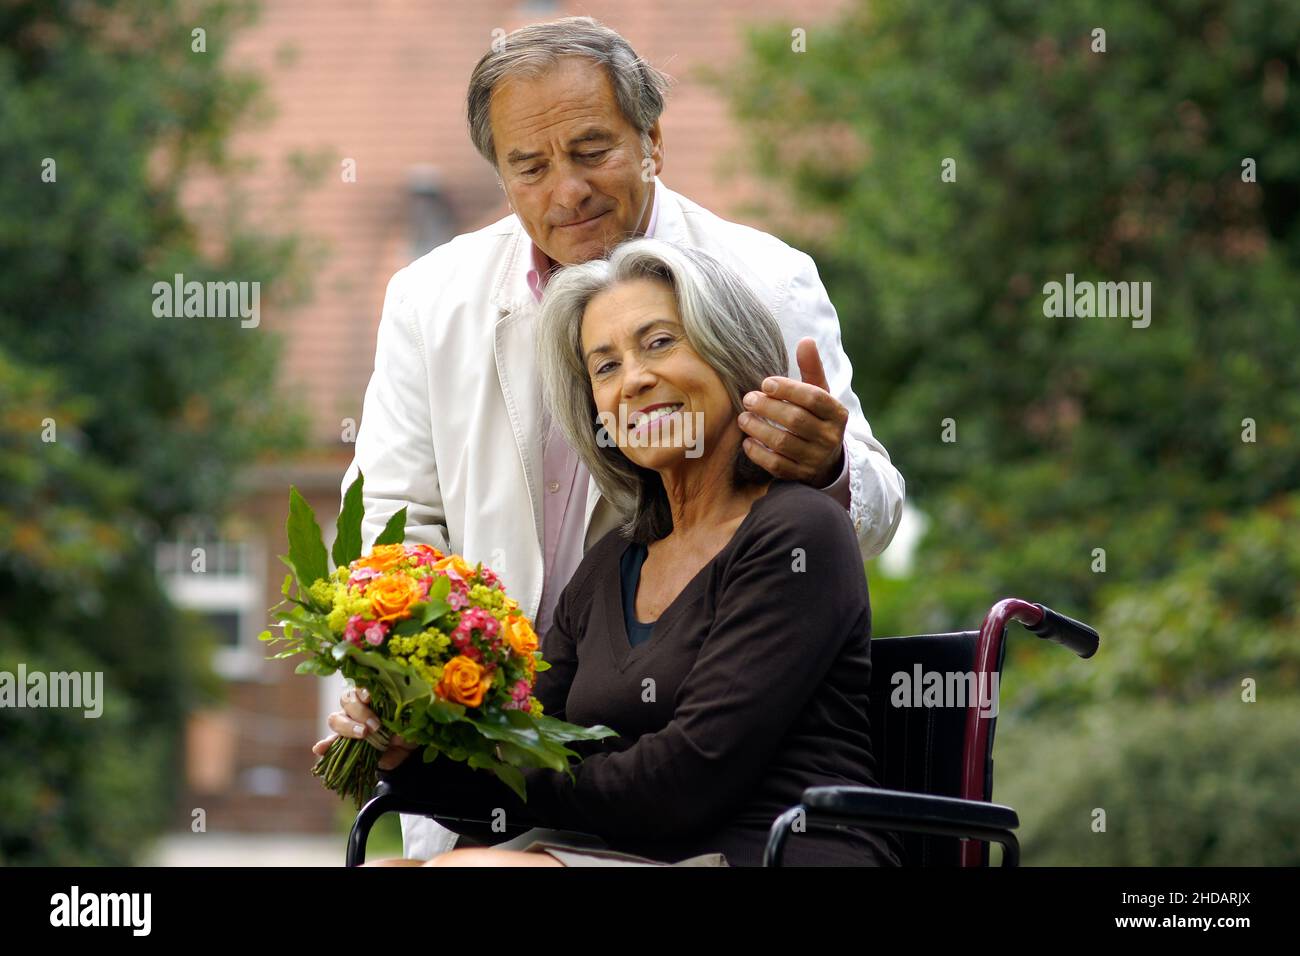 Ein älteres Paar im Grünen - die Frau sitzt im Rollstuhl und der Mann umarmt sie liebevol, Foto Stock